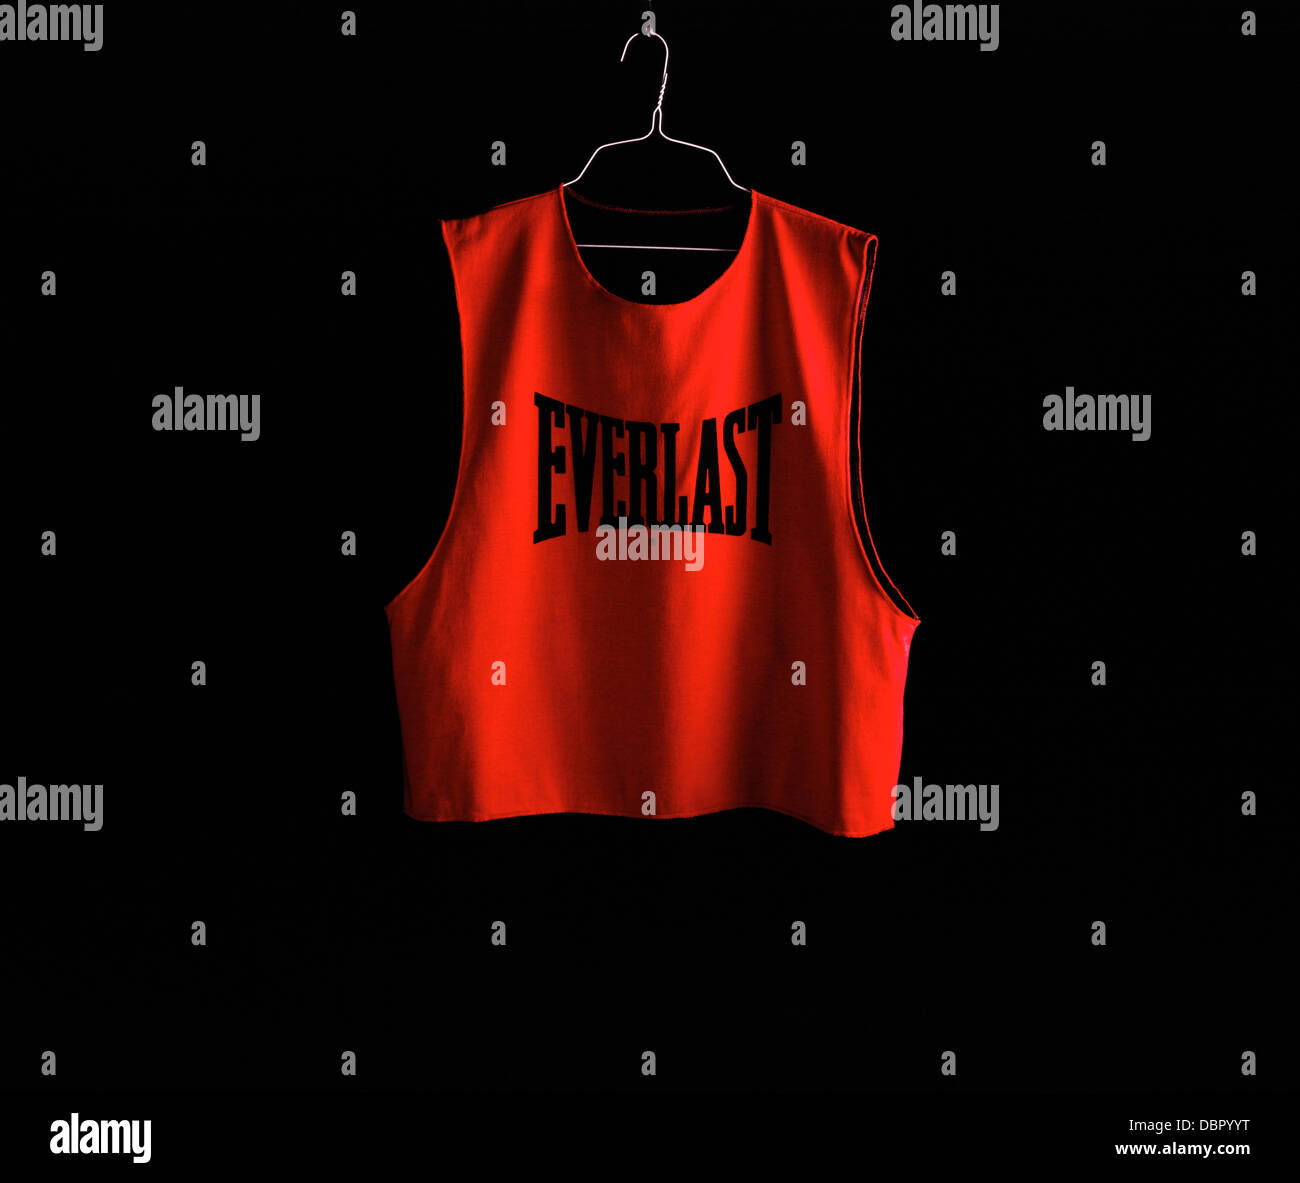 Red Everlast Shirt Stock Photo